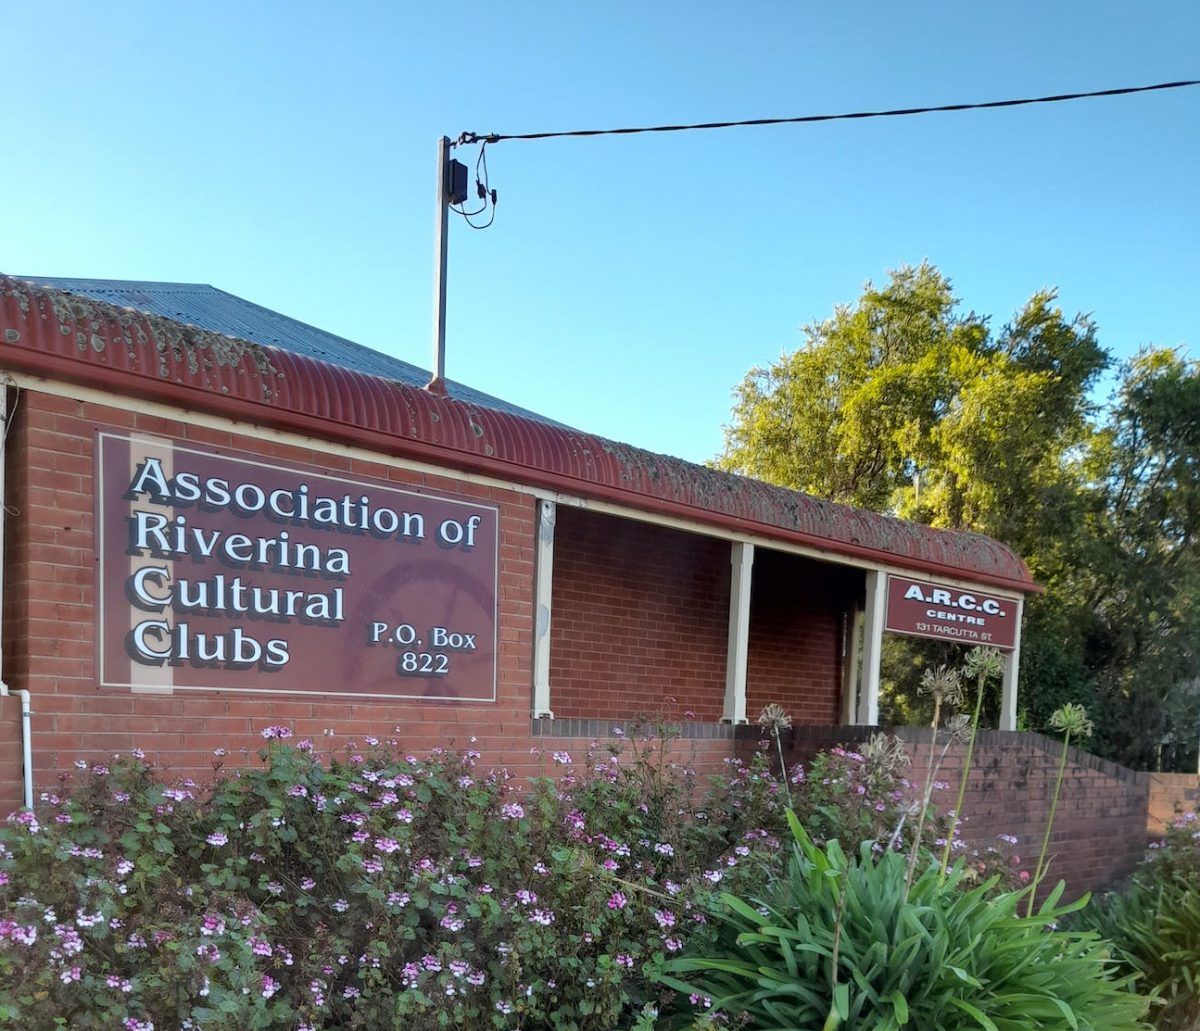 Association of Riverina Cultural Clubs building